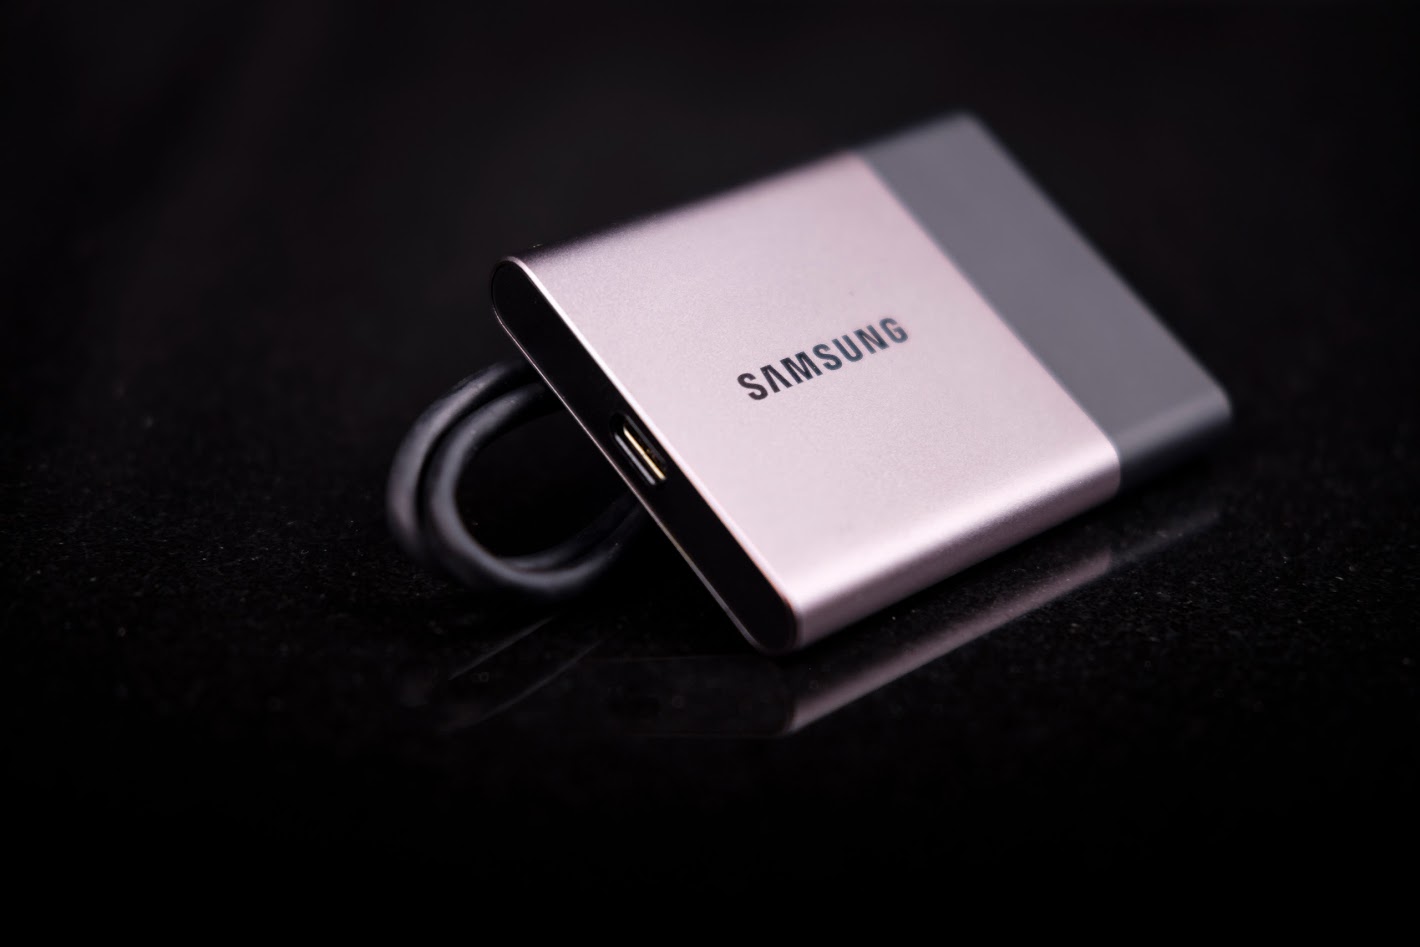 Samsung Portable SSD T3 - Lesertest Nils W. Schwarzer Hintergrund